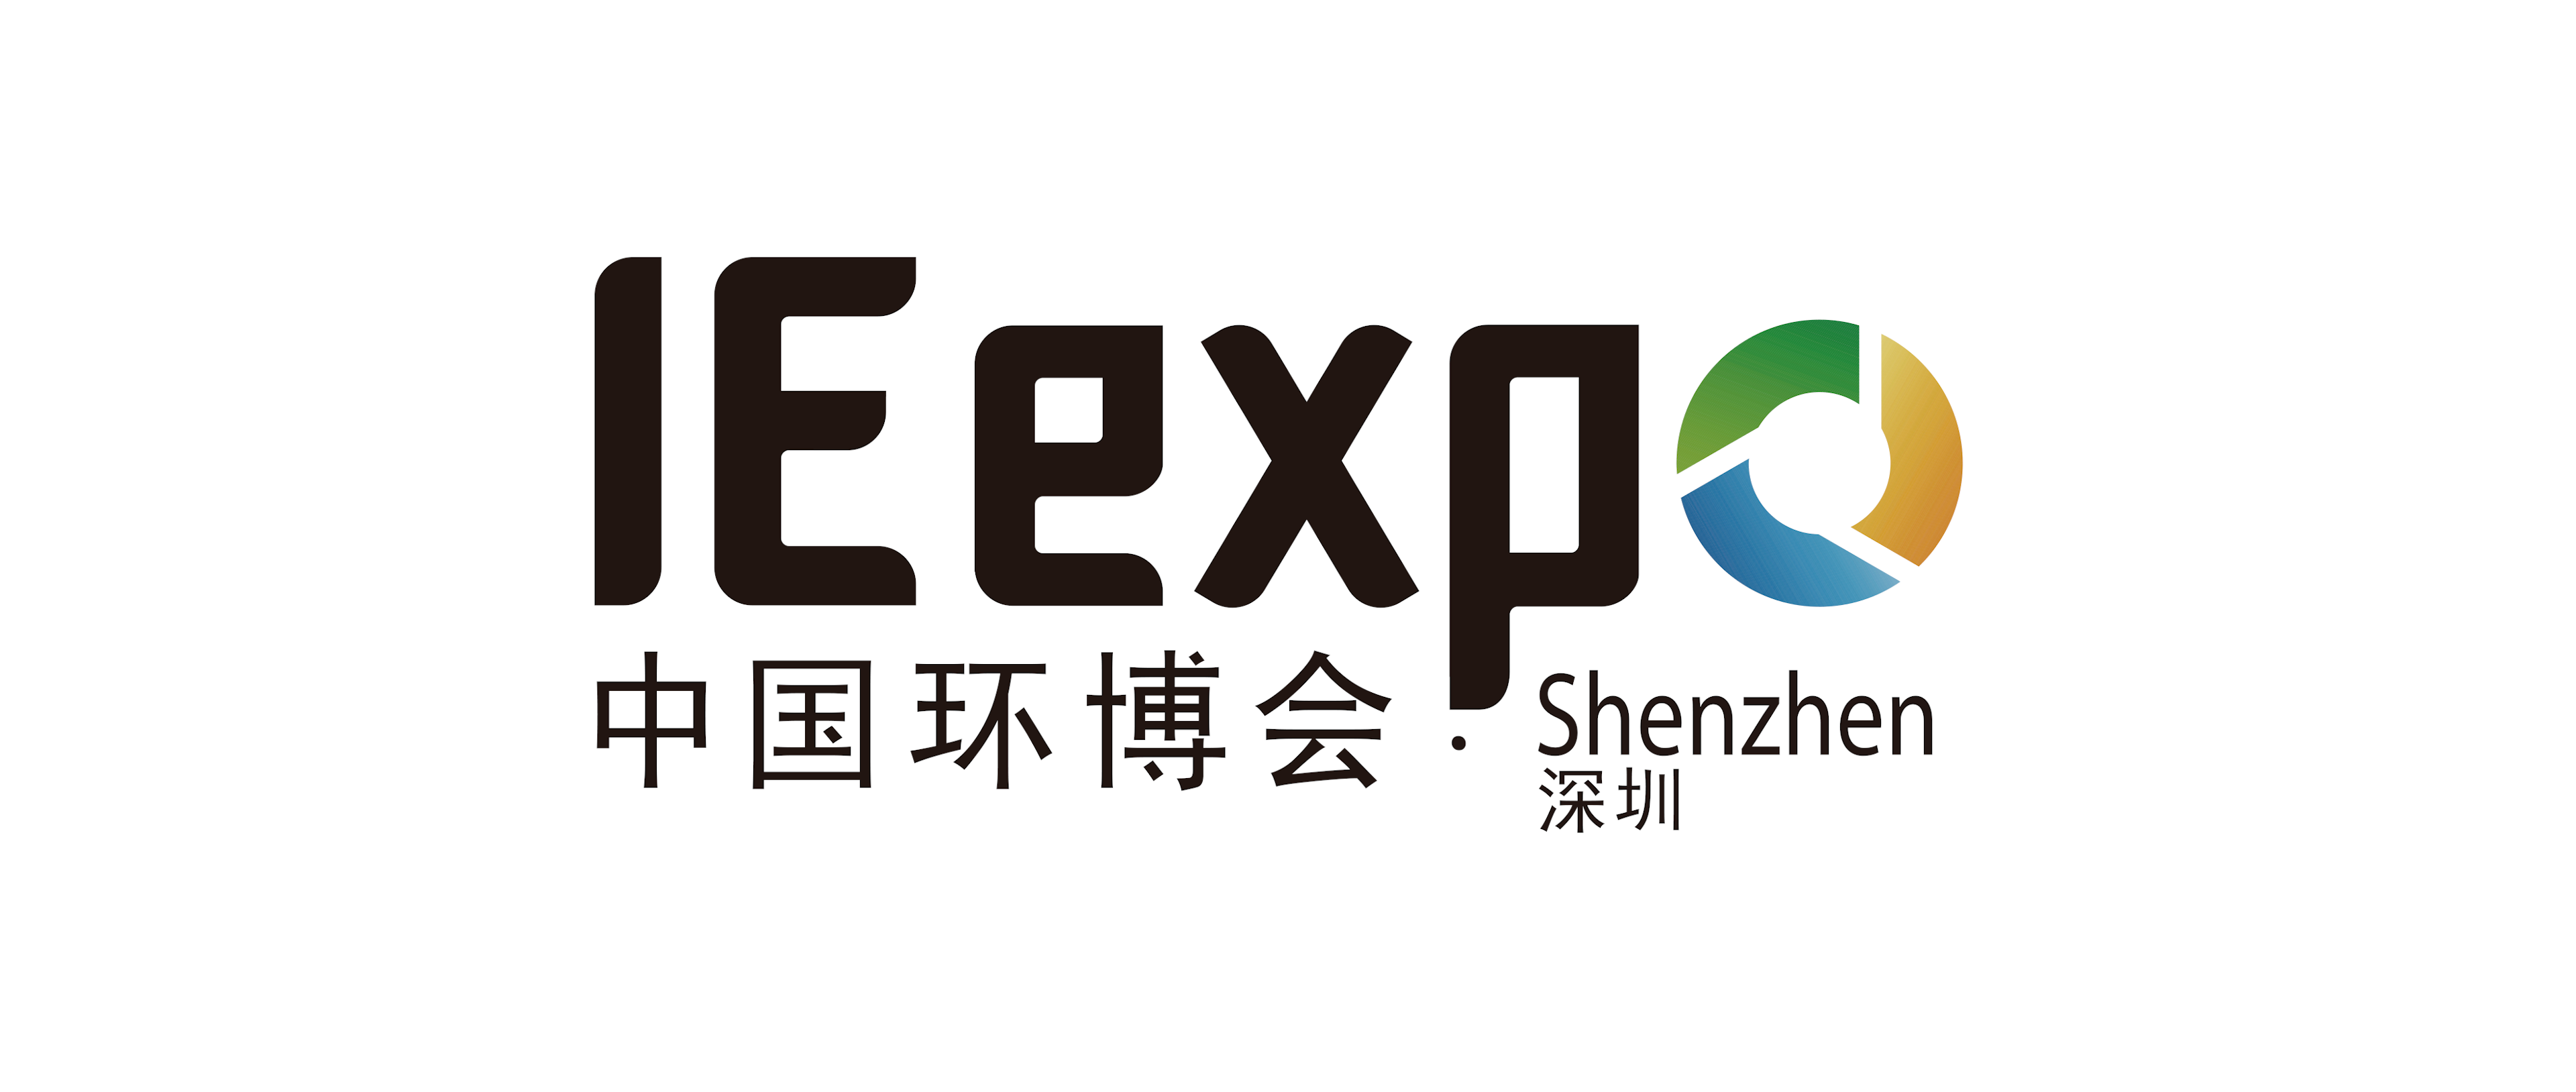 IE expo Shenzhen